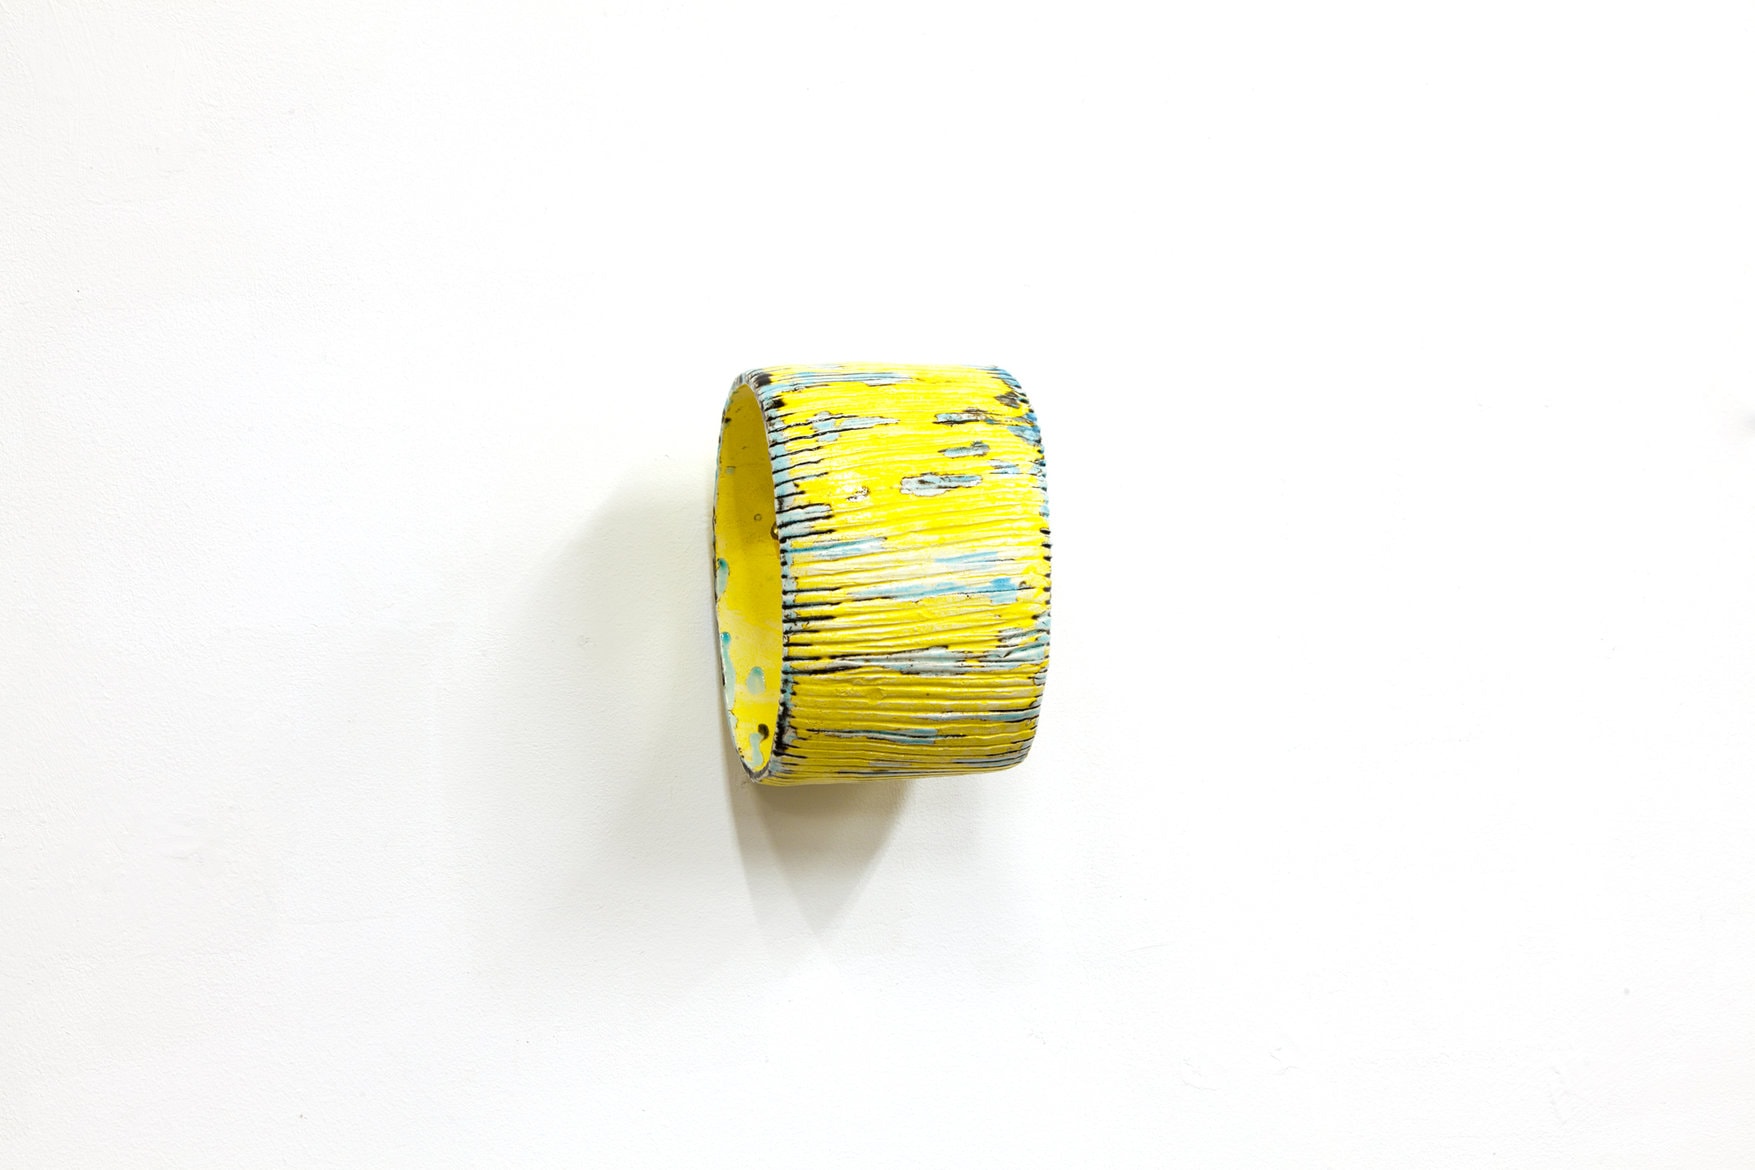 ‘Yellow oval’, 2021, glazed ceramic, ca. 20 x 13 x 17 cm